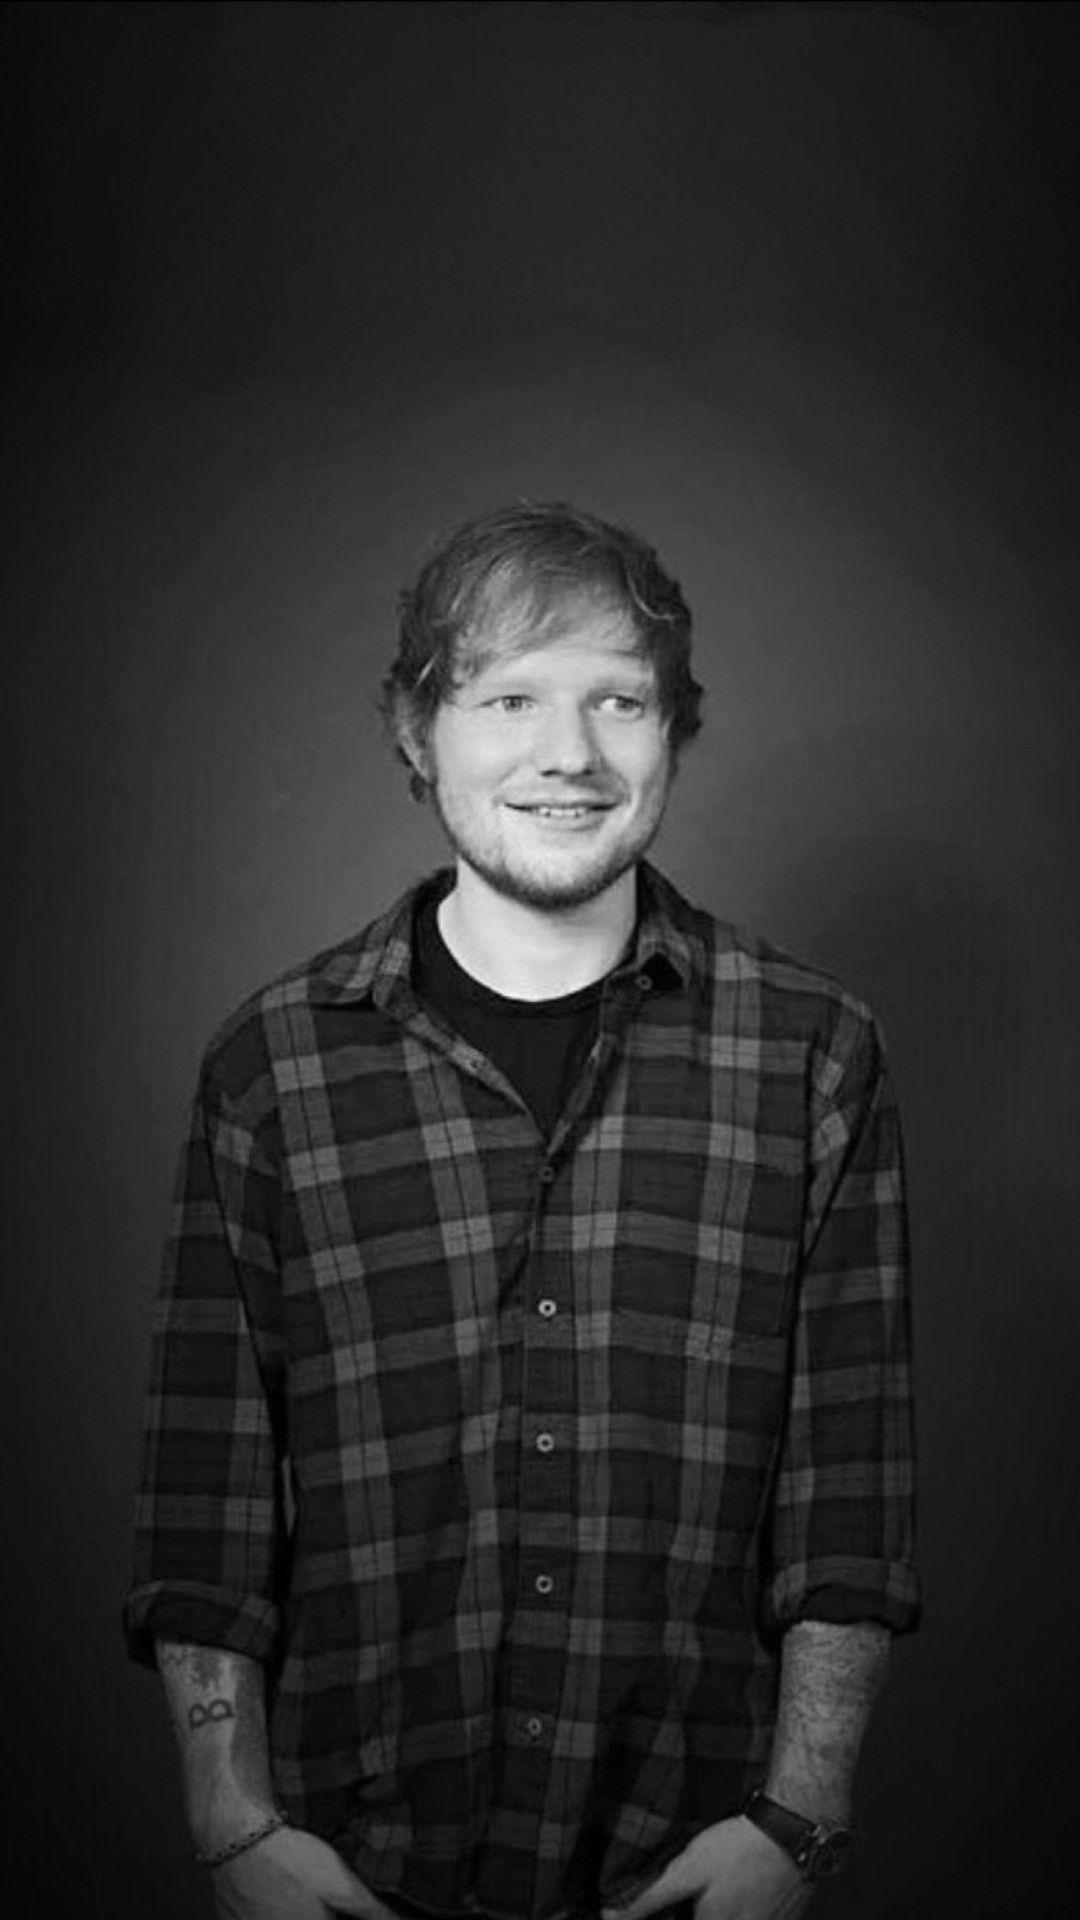 Ed Sheeran Lyrics Wallpaper